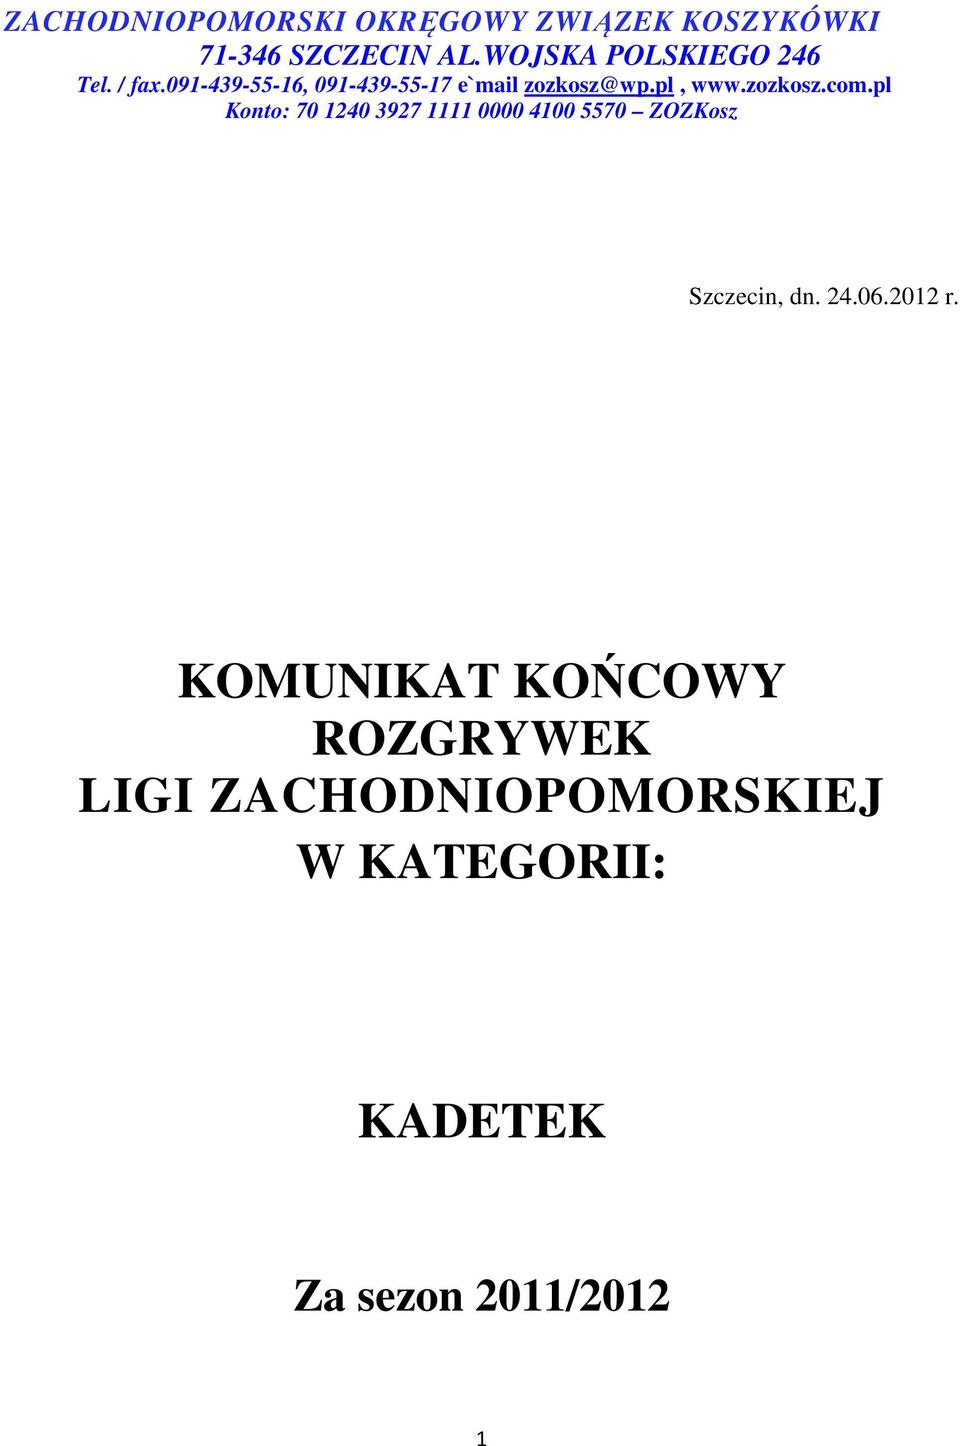 pl, www.zozkosz.com.